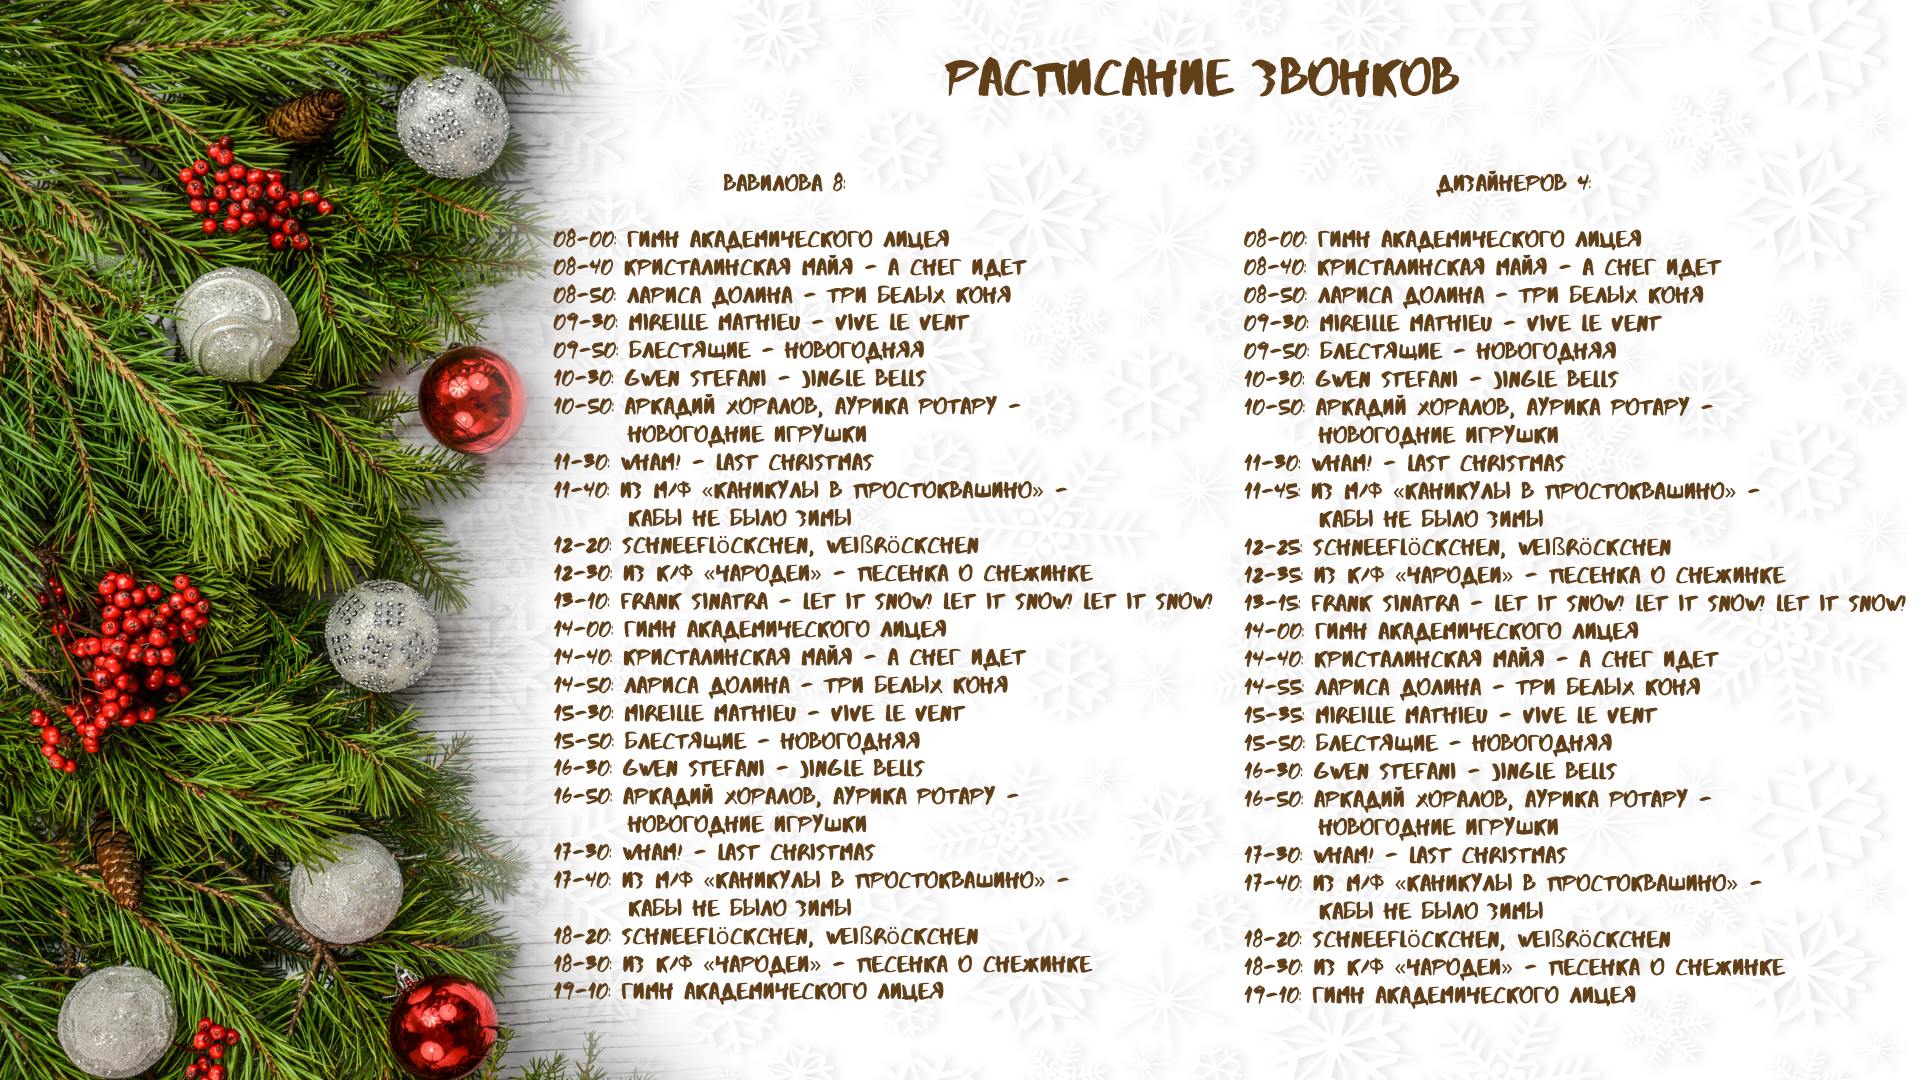 Новогодние песни список. Список песен про новый год. Новогодние песни список русские. Текст песни новый год.